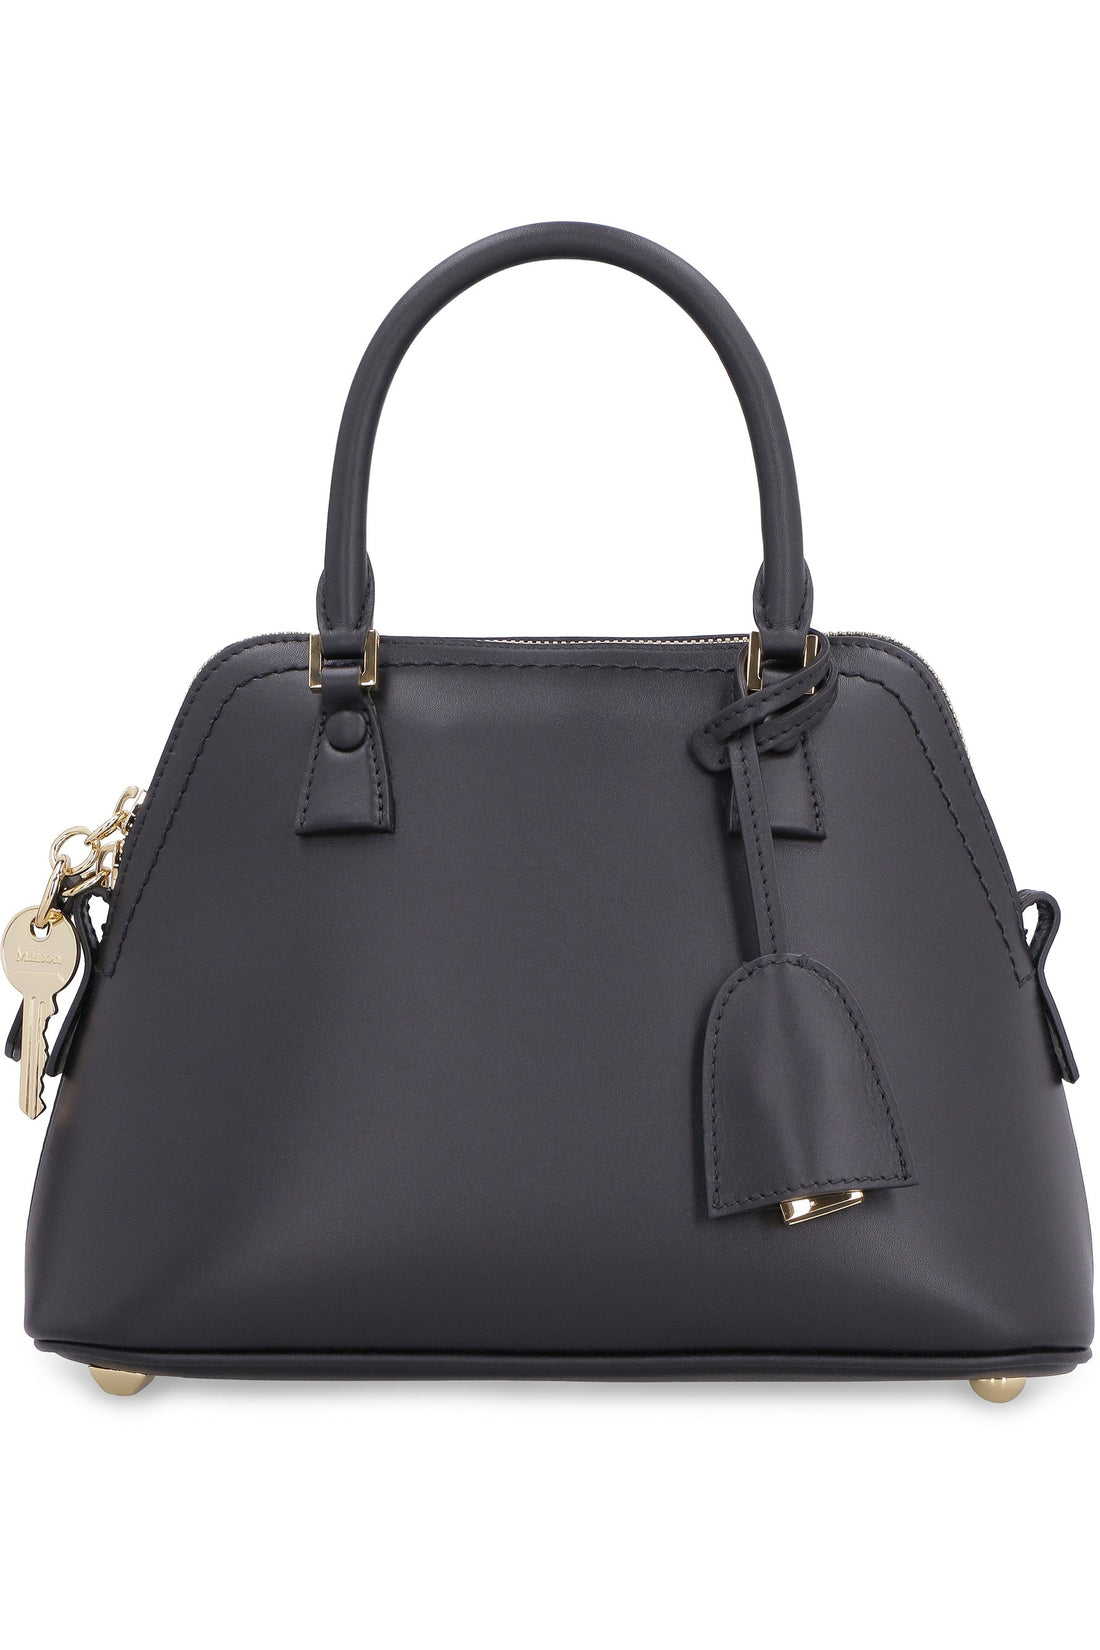 Maison Margiela-OUTLET-SALE-5AC Mini leather handbag-ARCHIVIST